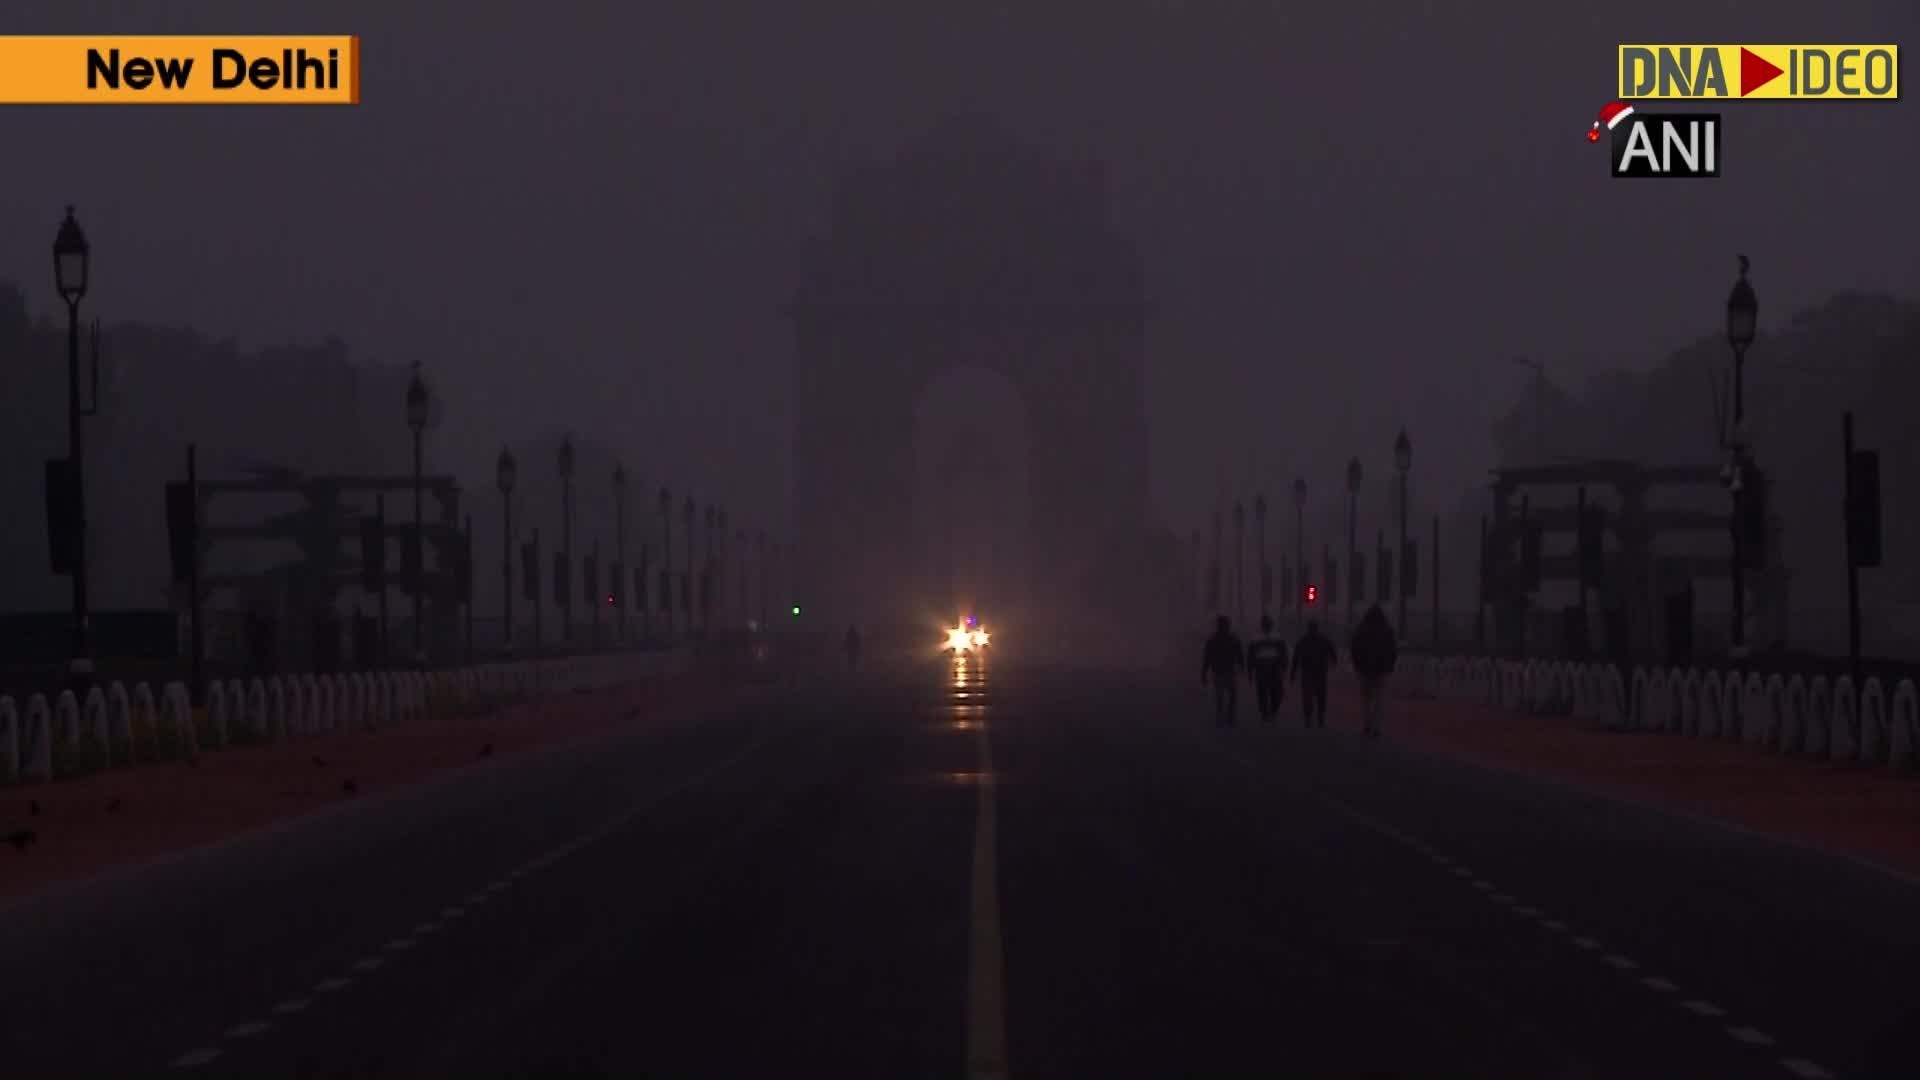 Delhi witnesses foggy Christmas morning1920 x 1080